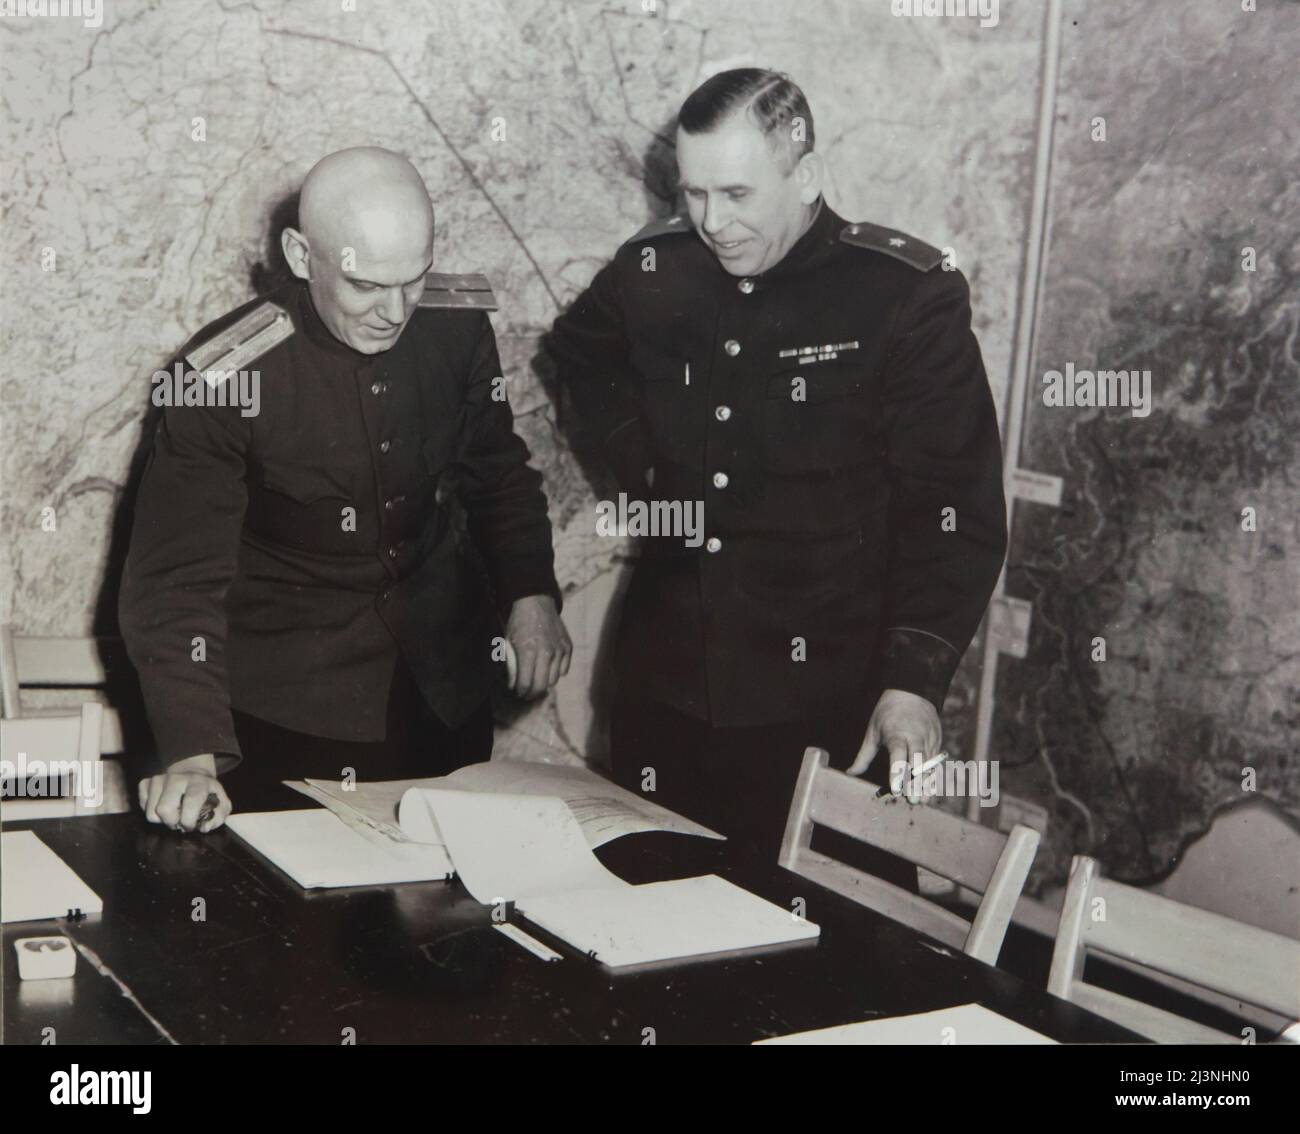 El general soviético Ivan Susloparov (también escrito como Ivan Sousloparov) y su intérprete Ivan Cherniaev (a la izquierda), representados en la Sala de Mapas, también conocida como Sala de Guerra de la Fuerza Expedicionaria Aliada de la Sede Suprema (SHAEF) en el Museo de la Rendición (Musée de la Reddition) en Reims, Francia, El 6 de mayo de 1945. El primer Instrumento Alemán de Rendición que terminó la Segunda Guerra Mundial en Europa fue firmado en esta mesa en esta sala a las 02:41 hora de Europa Central (CET) el 7 de mayo de 1945. La sala histórica se sirve ahora como parte del Museo de la Surrender (Musée de la Reddition). El negro y whi Foto de stock